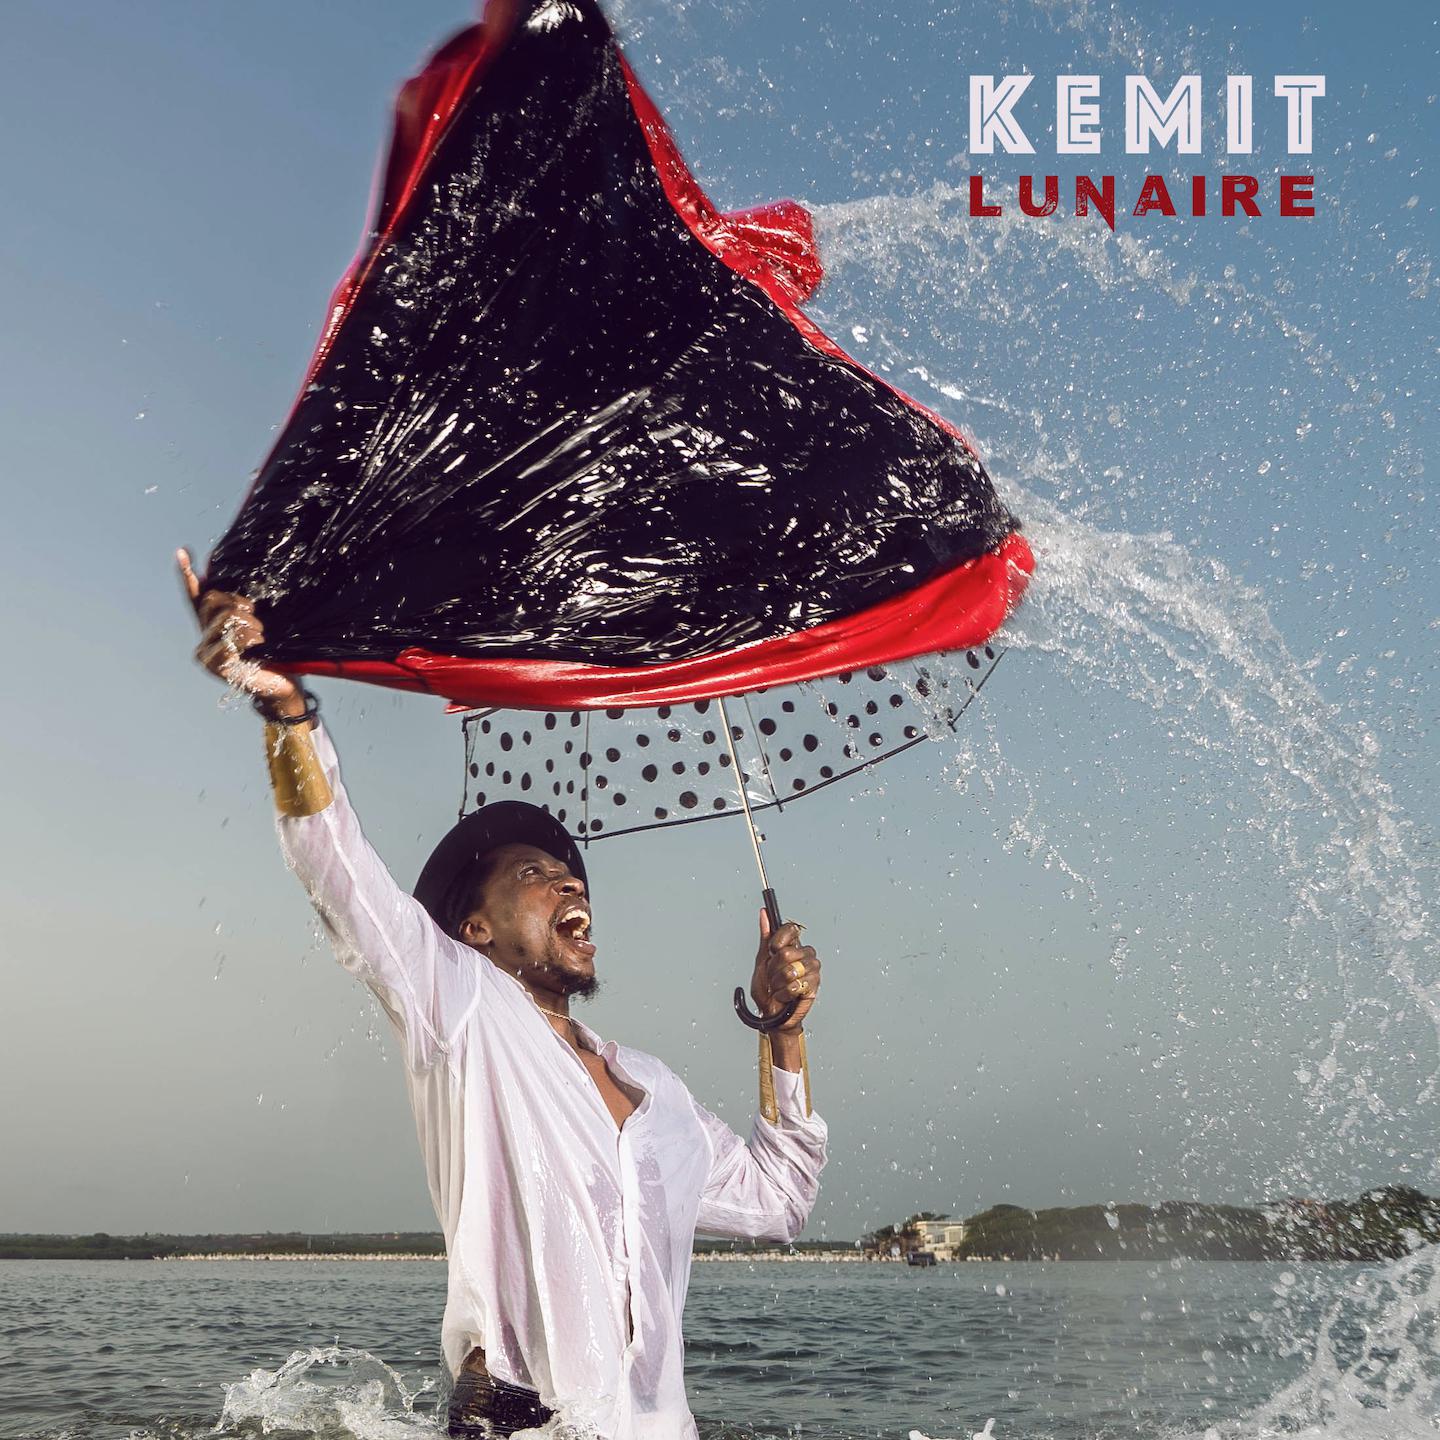 Kemit - What I want again